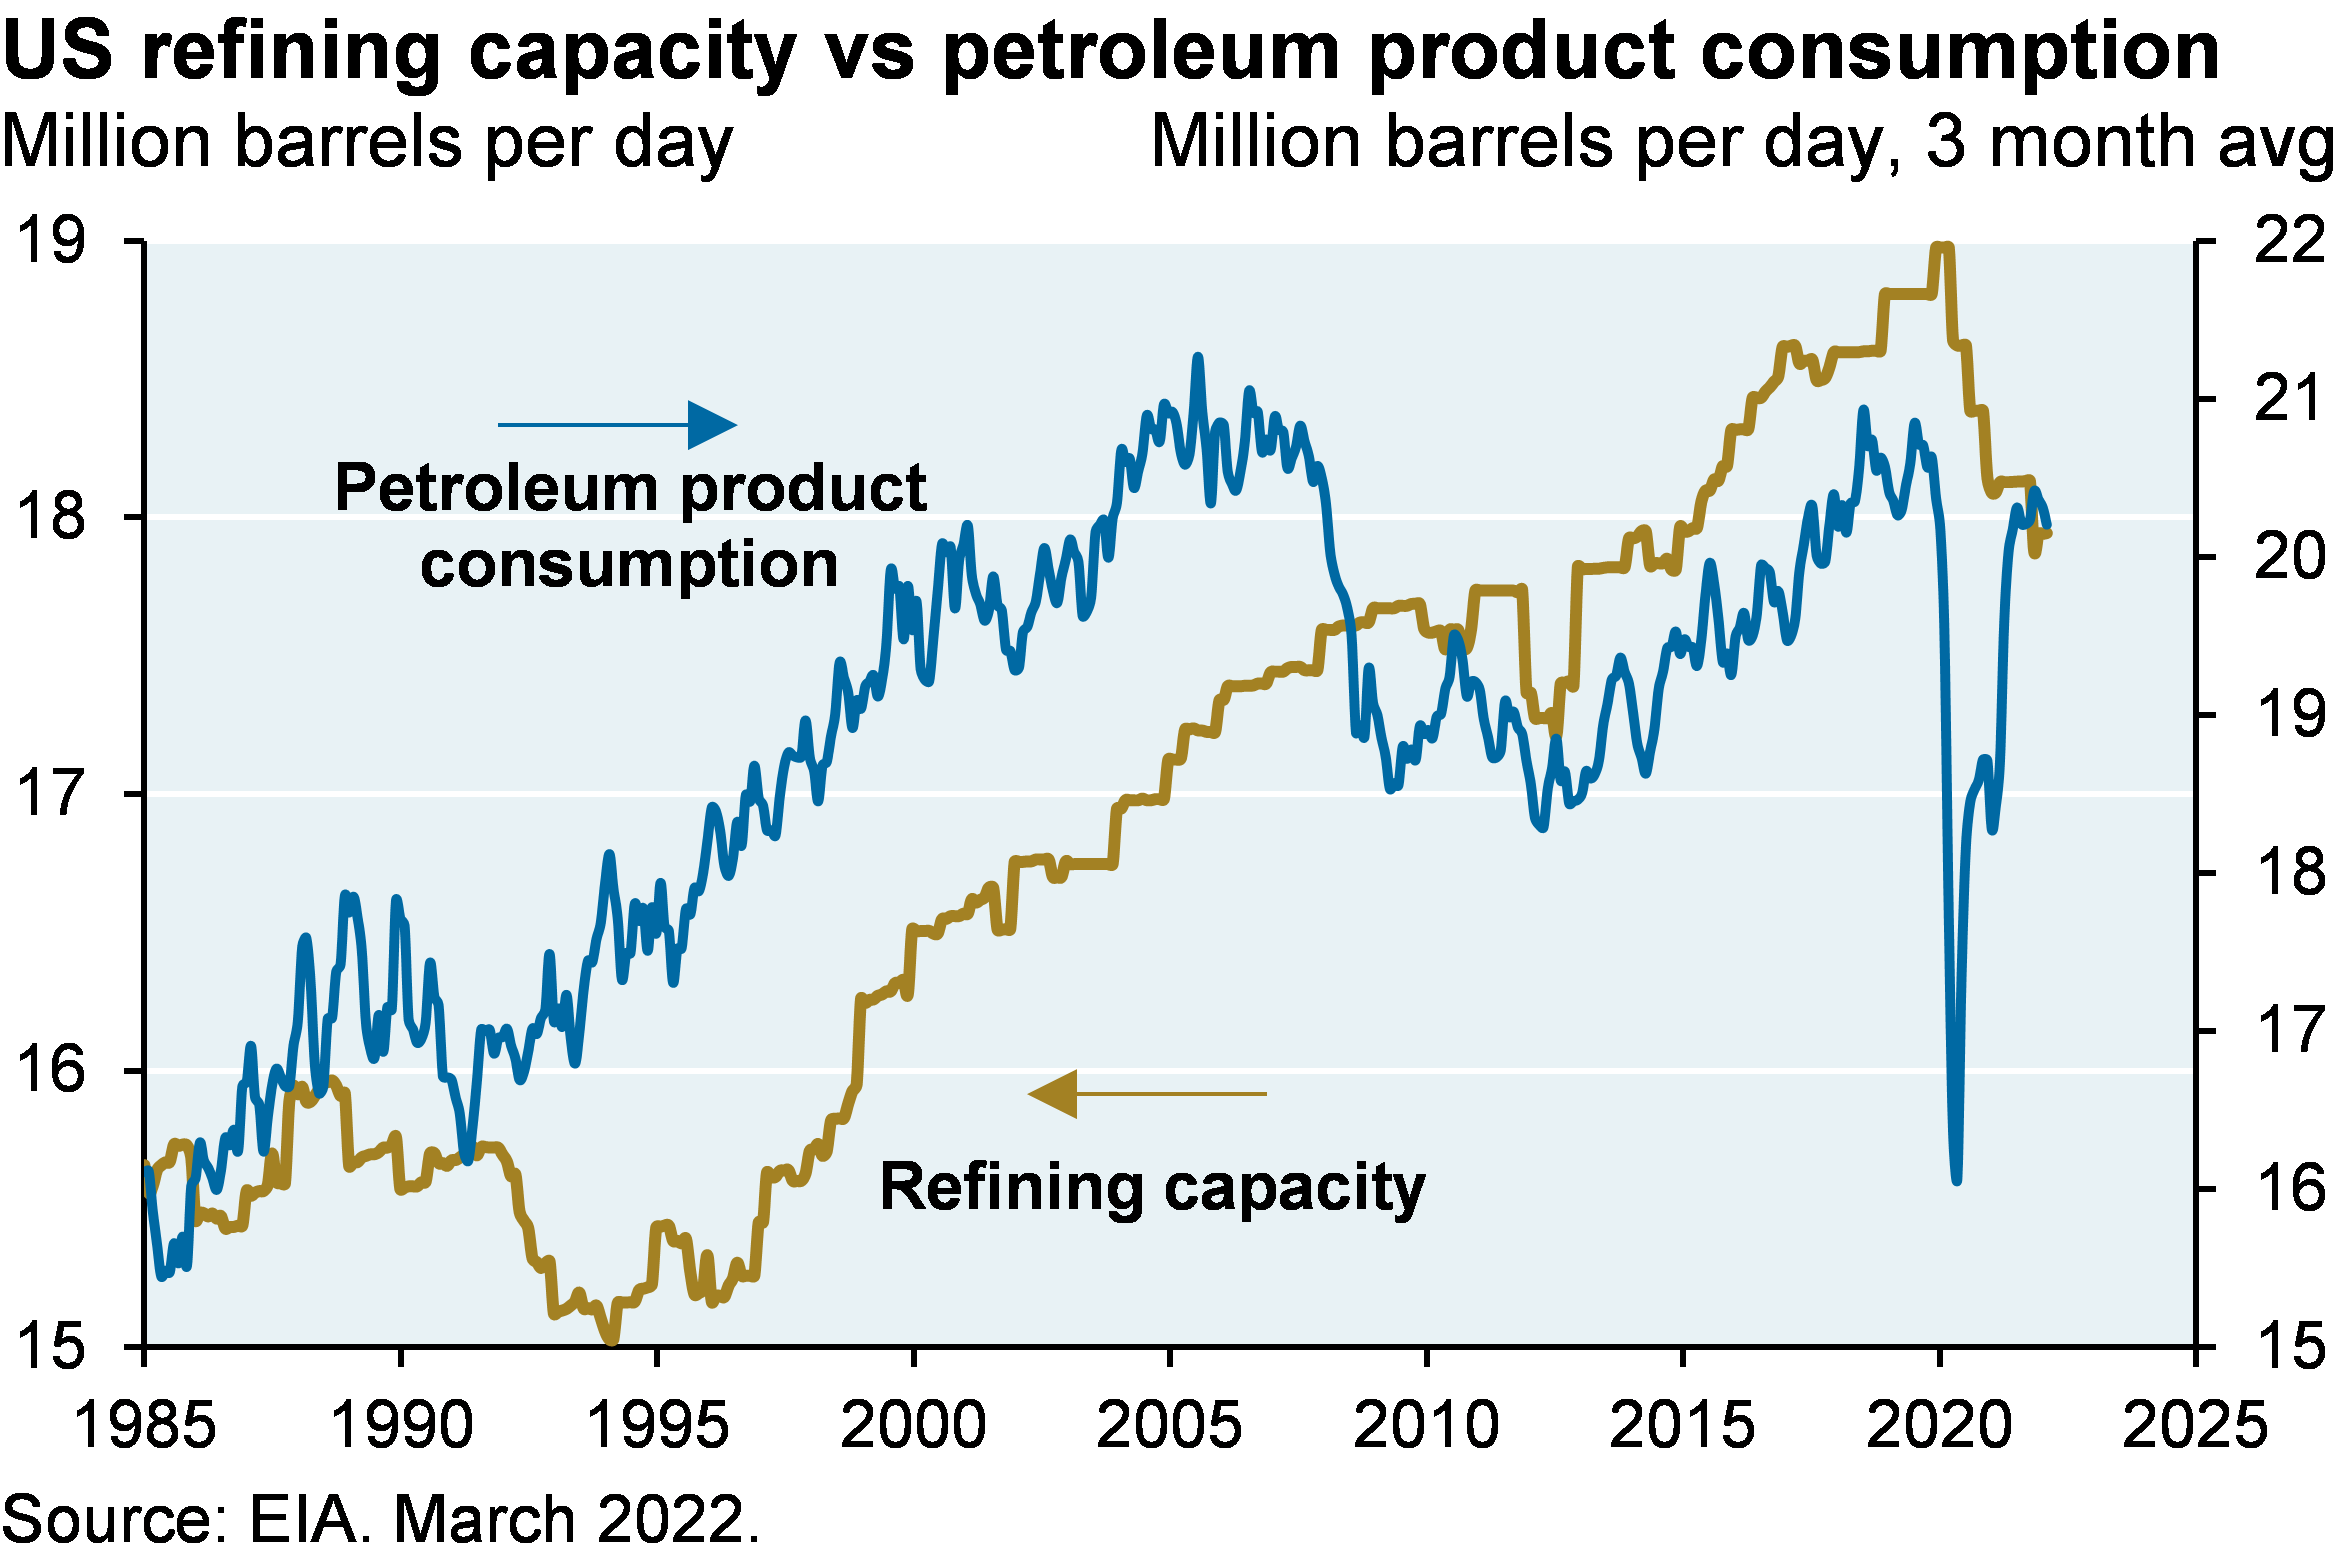 US refining capacity vs petroleum product consumption